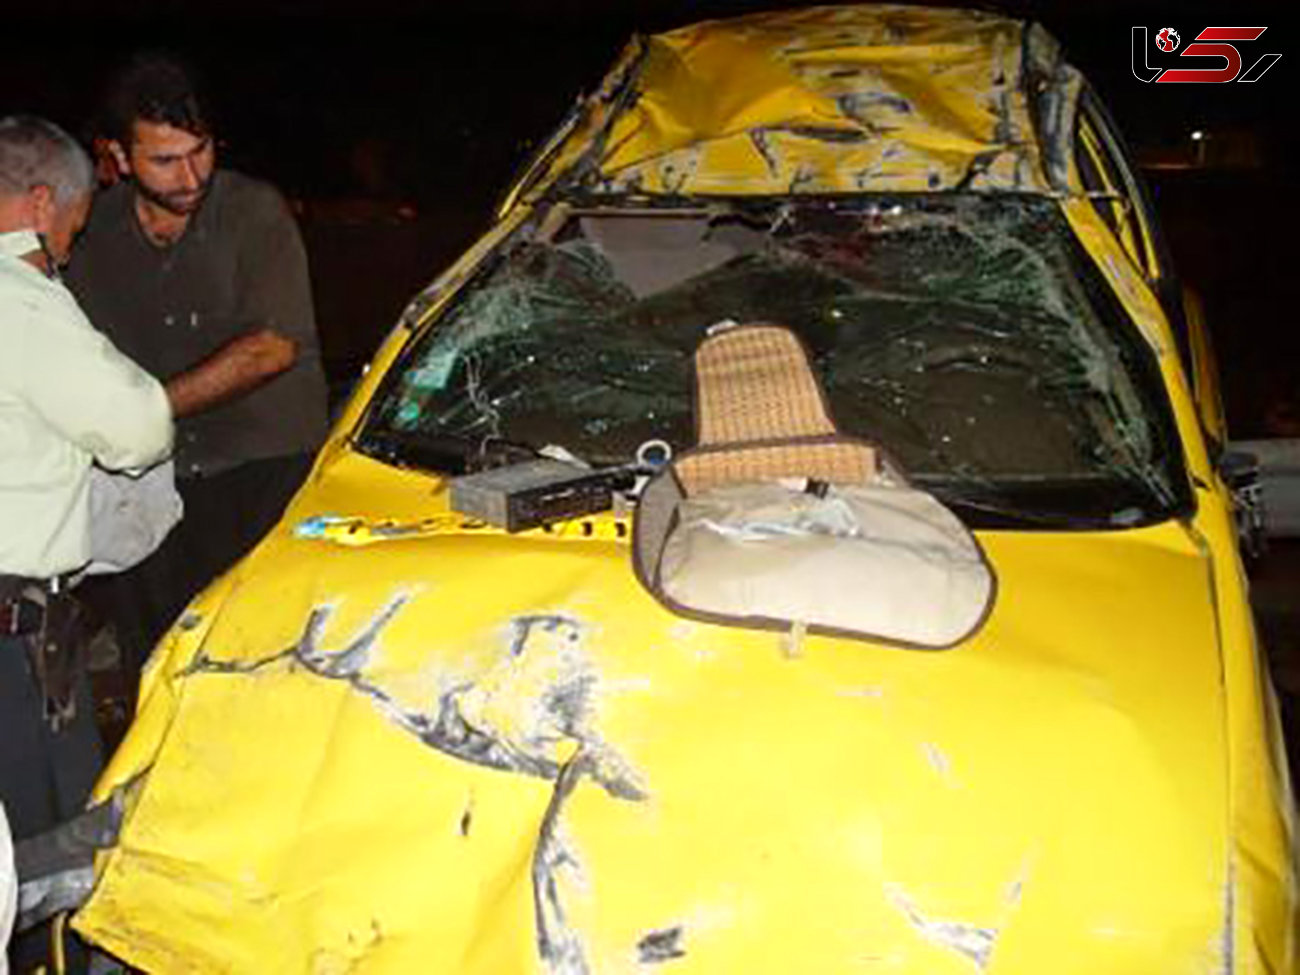 تاکسی زرد رنگ  مرگ خونین 2 مسافر را رقم زد+ عکس 